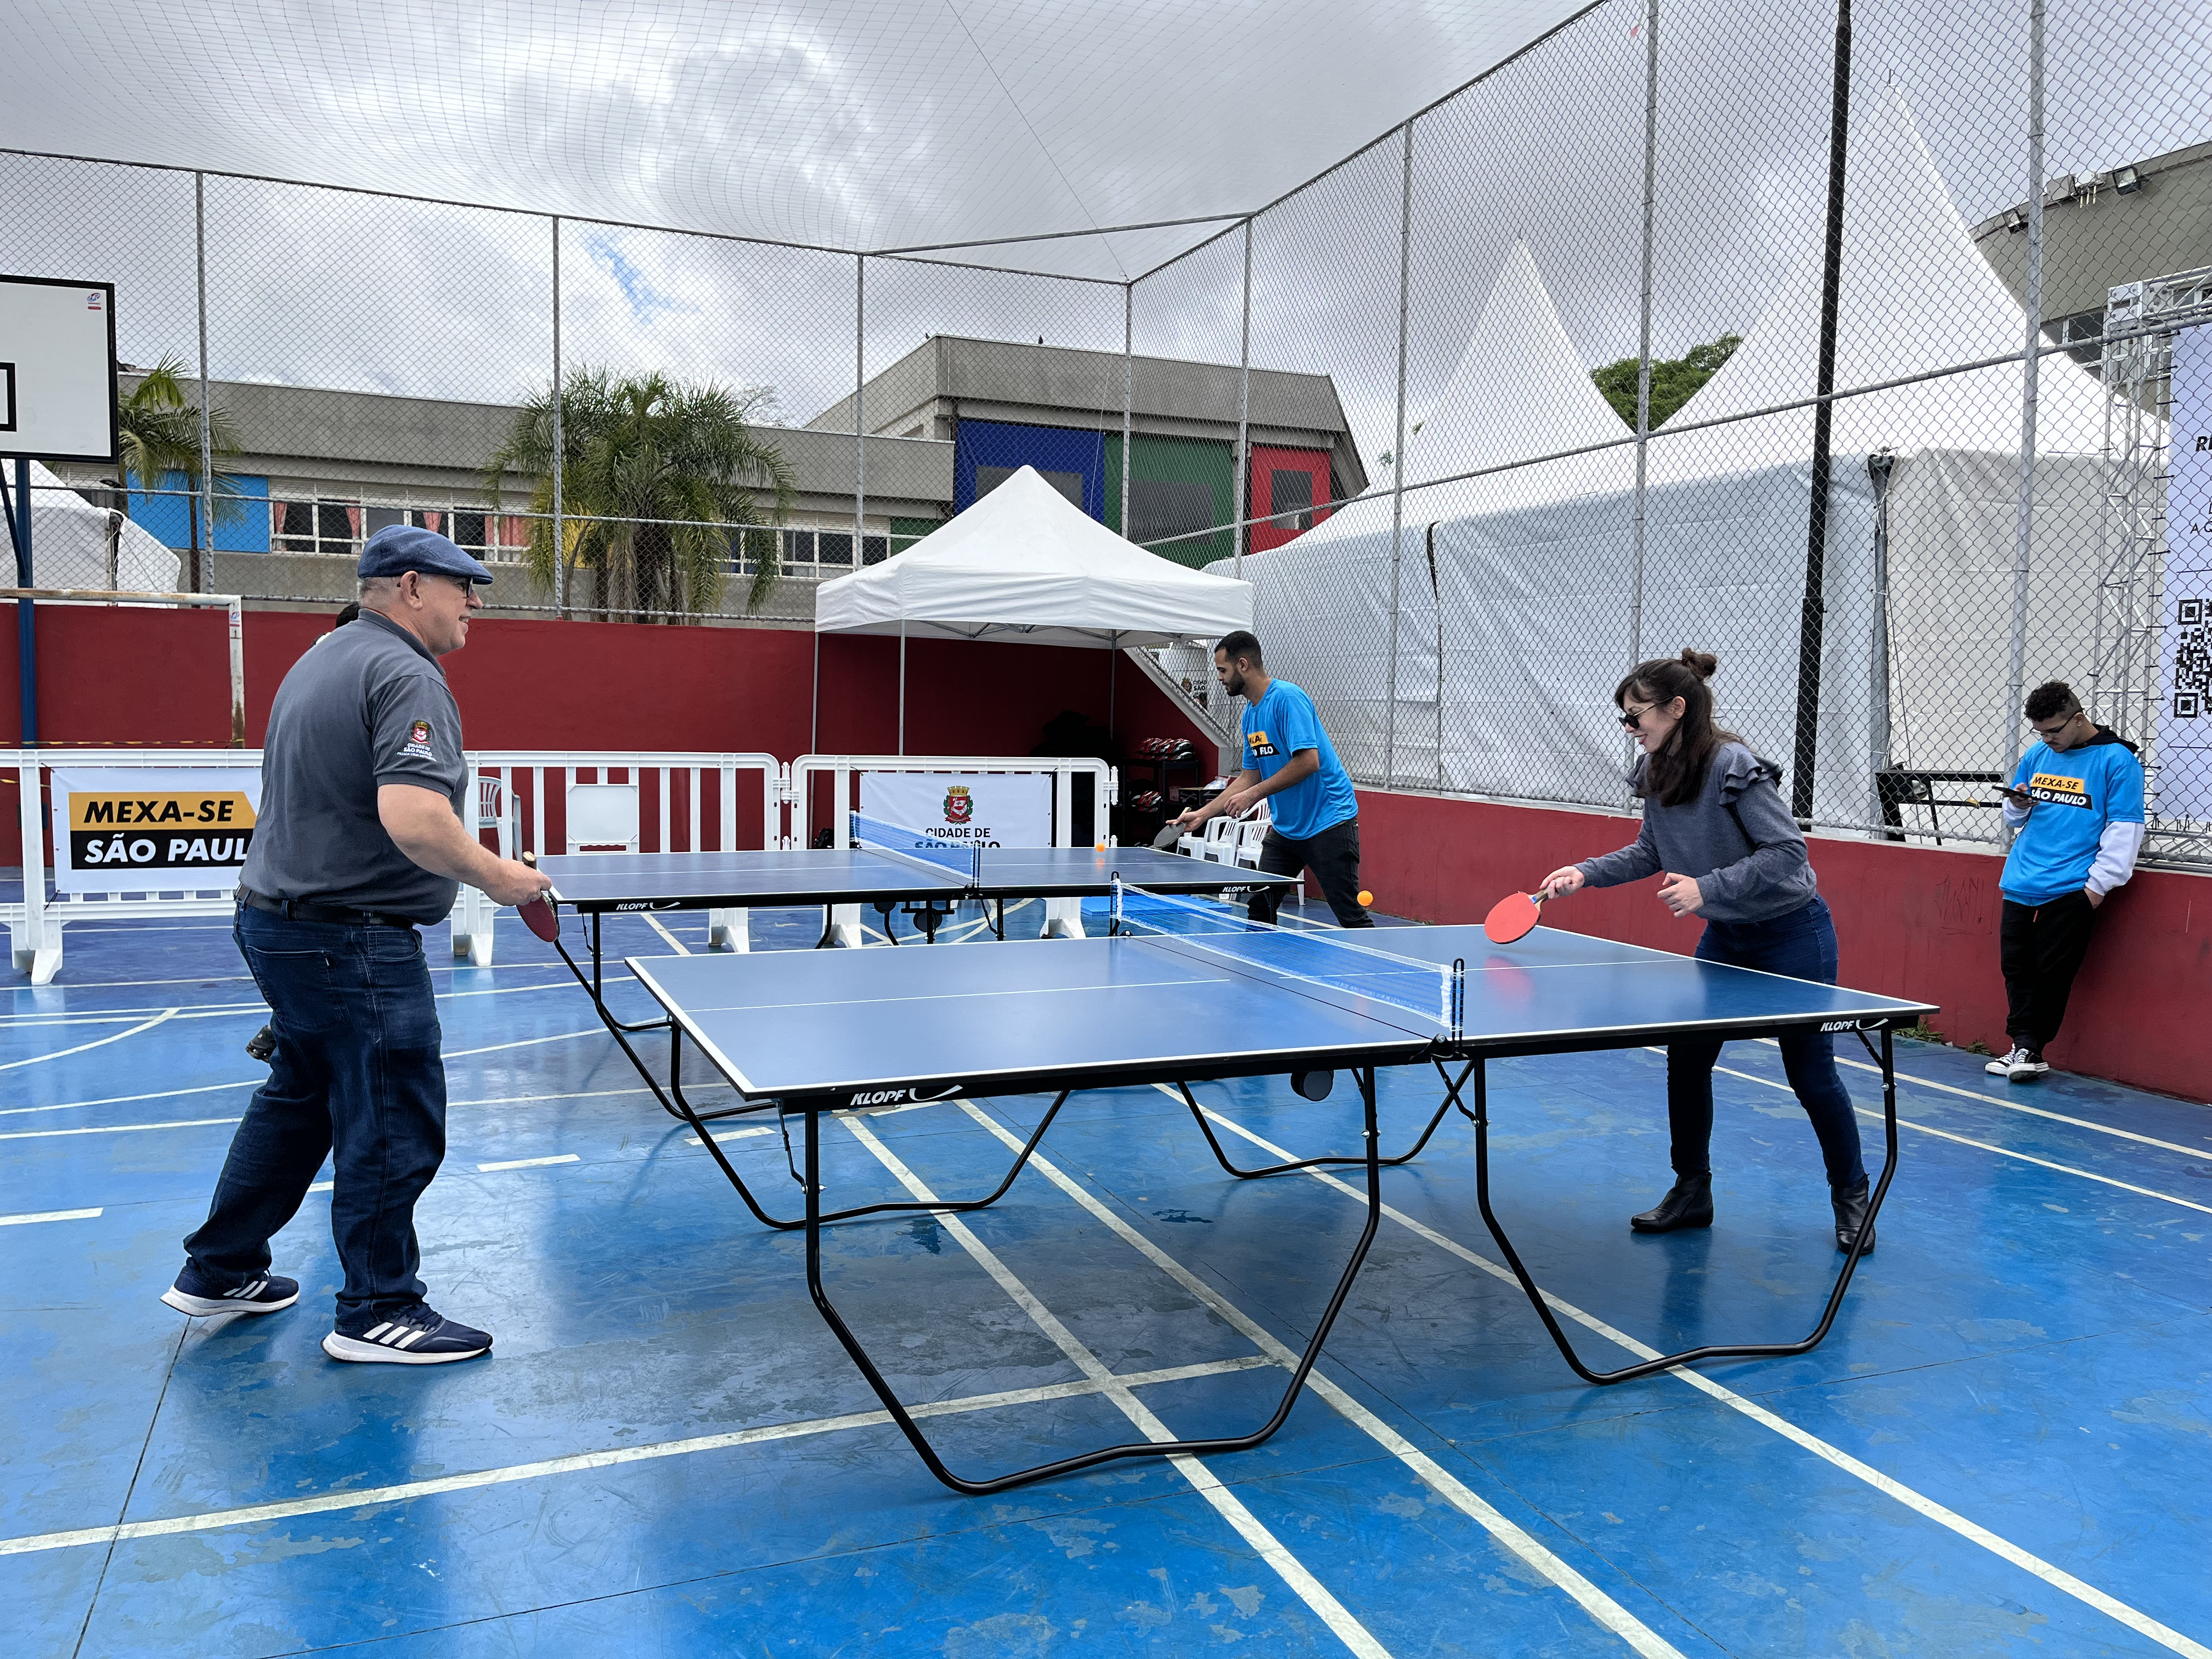 Três pessoas aparecem na foto jogando em uma mesa de ping pong 